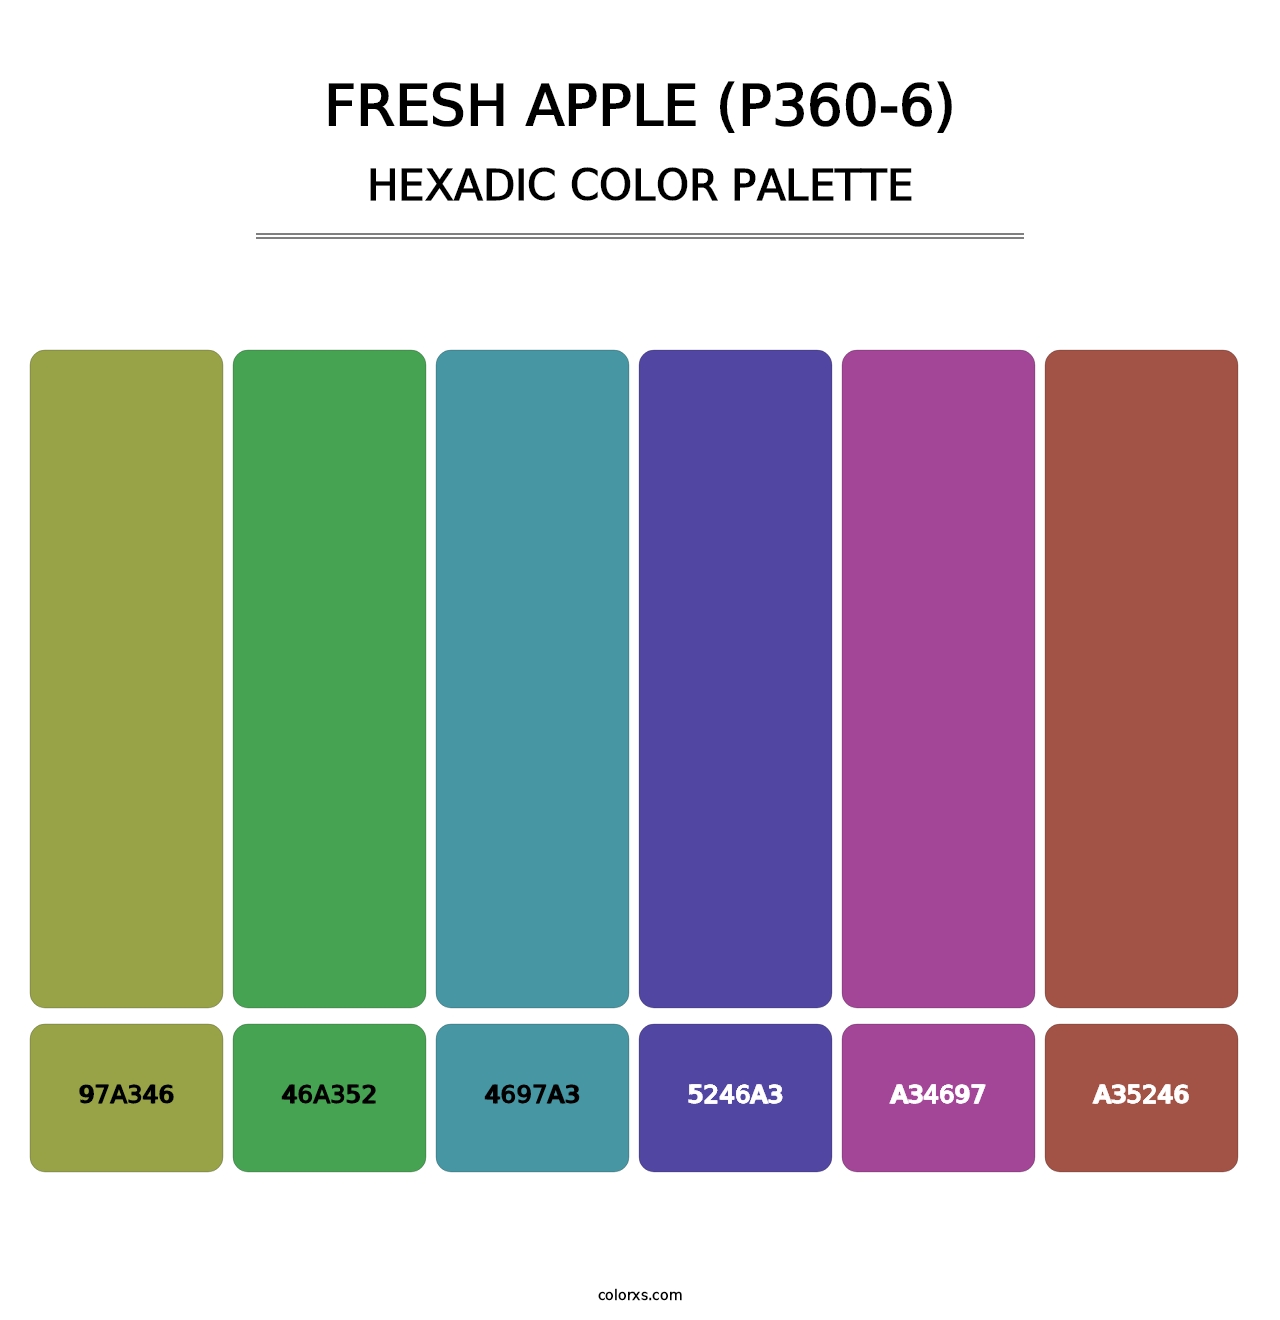 Fresh Apple (P360-6) - Hexadic Color Palette